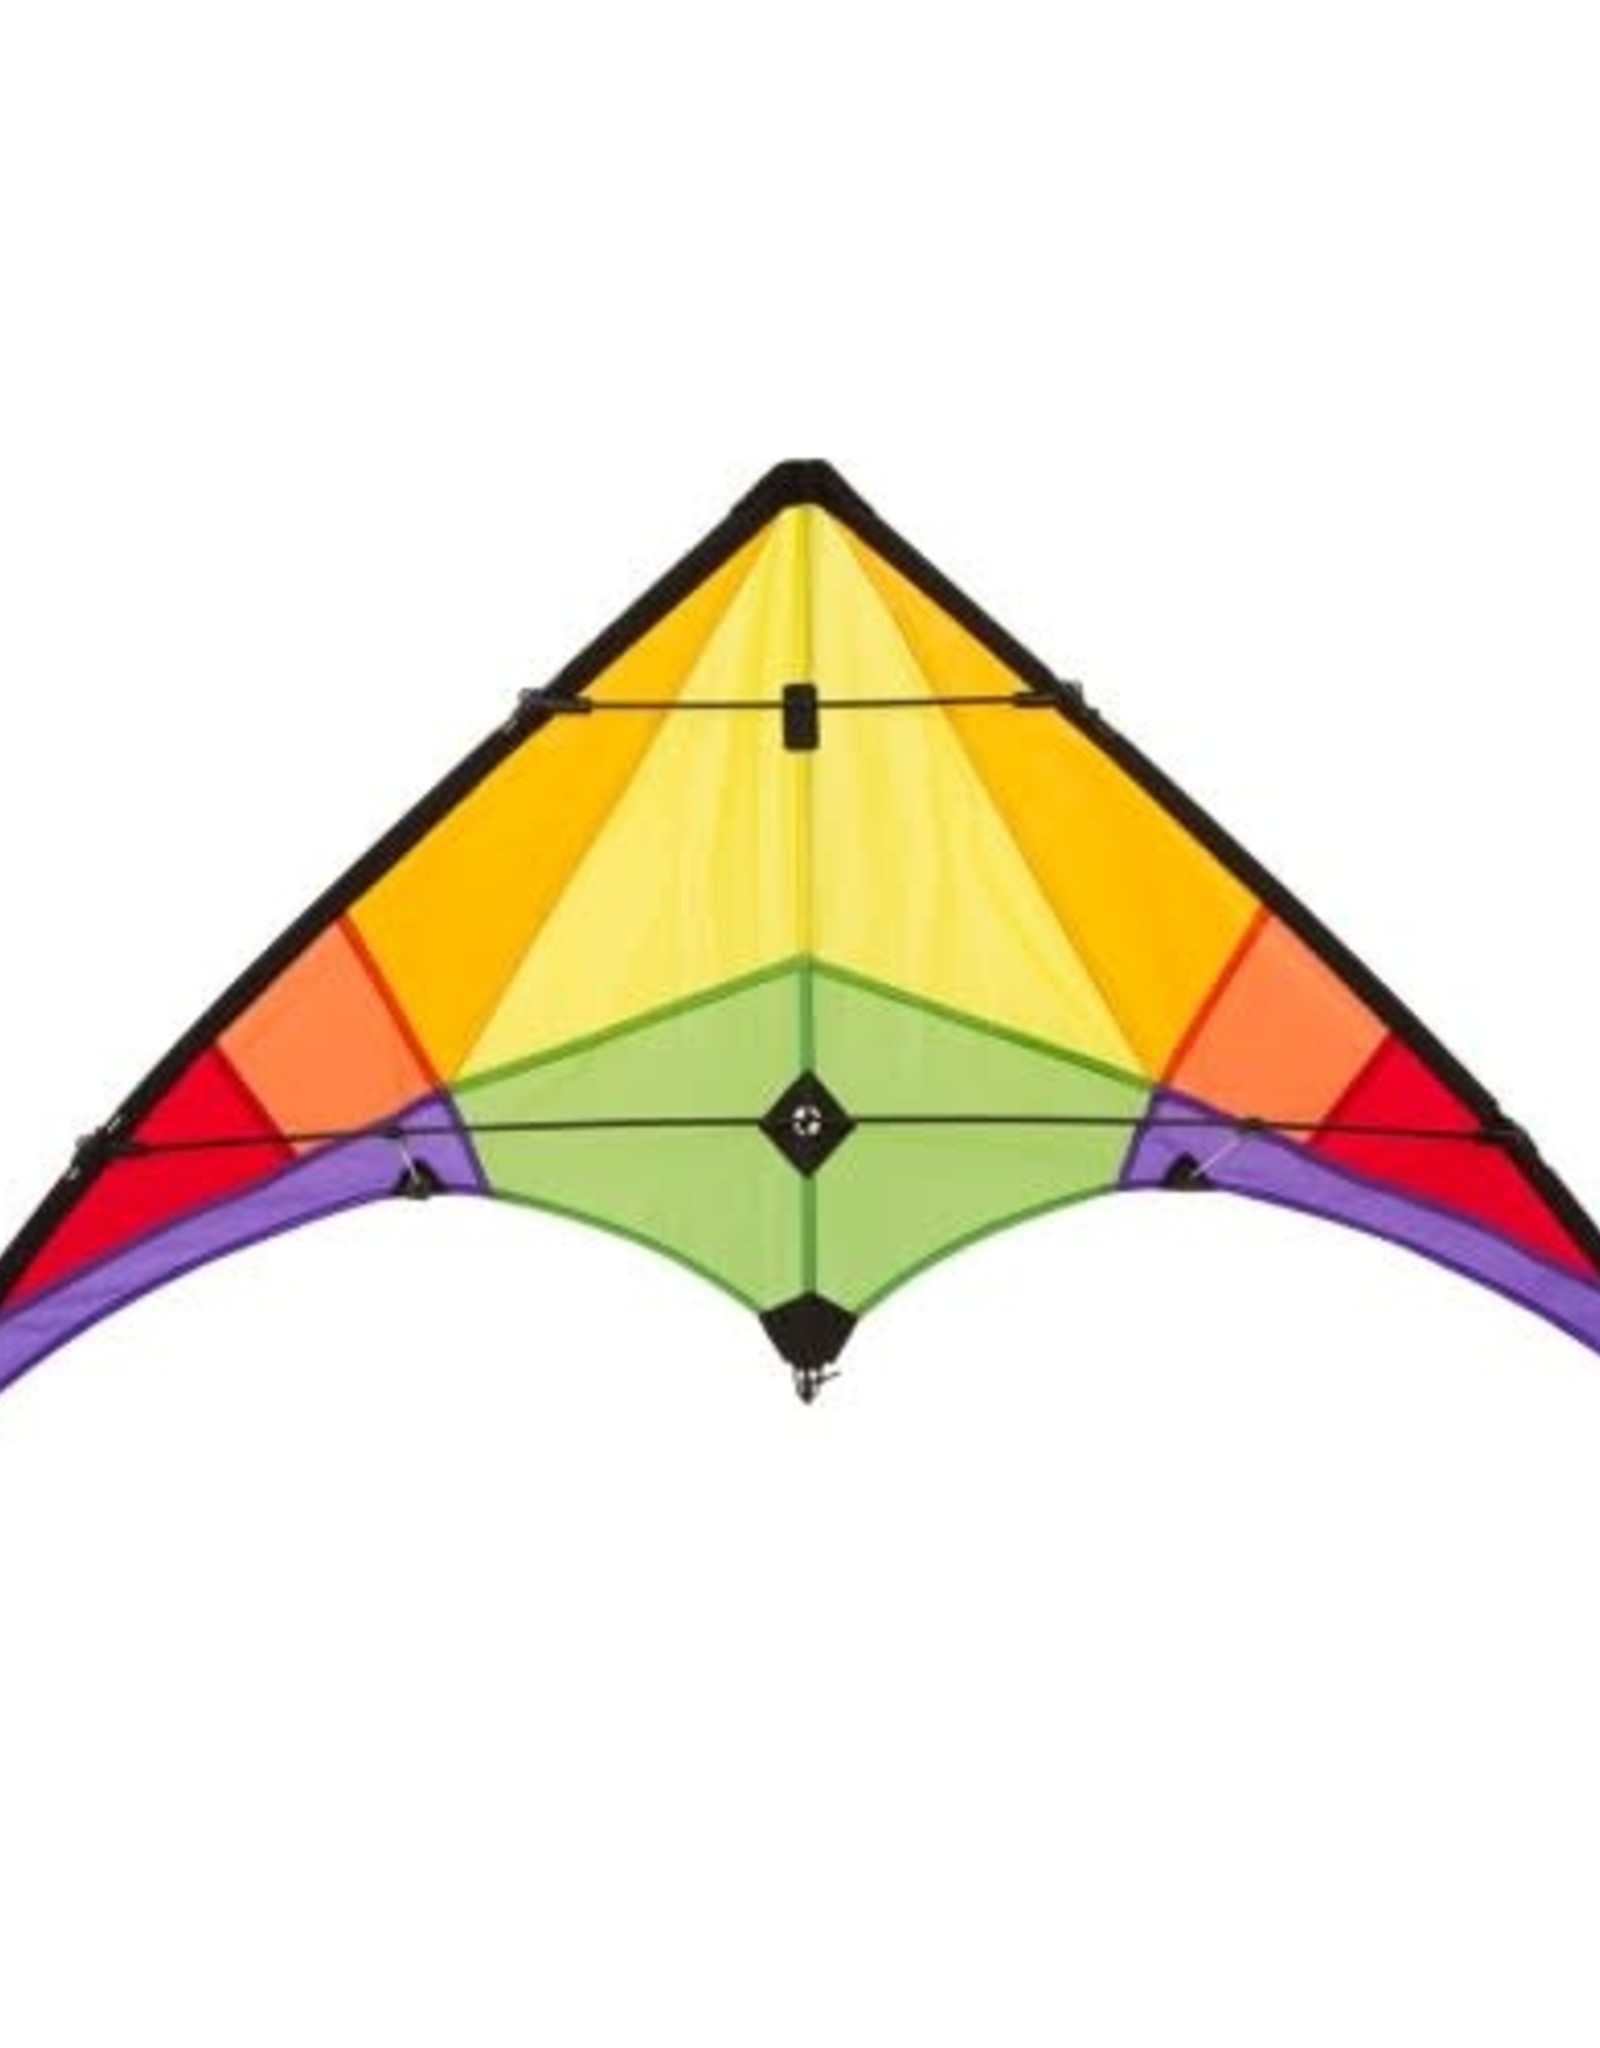 Ecoline Stunt Kite Rookie Rainbow